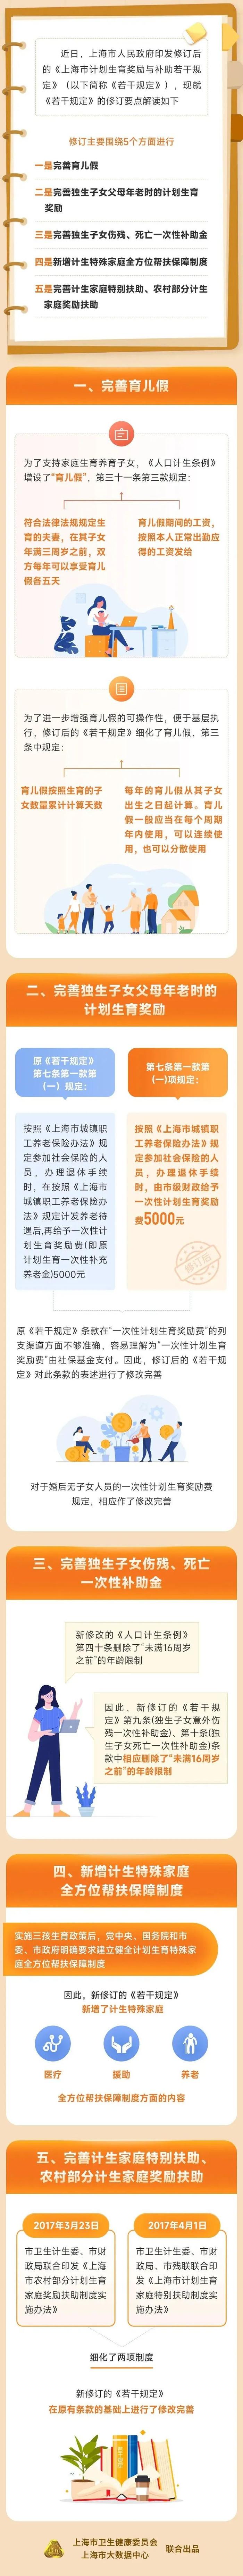 【最新】完善育儿假、新增帮扶保障......沪发布修订后的《上海市计划生育奖励与补助若干规定》